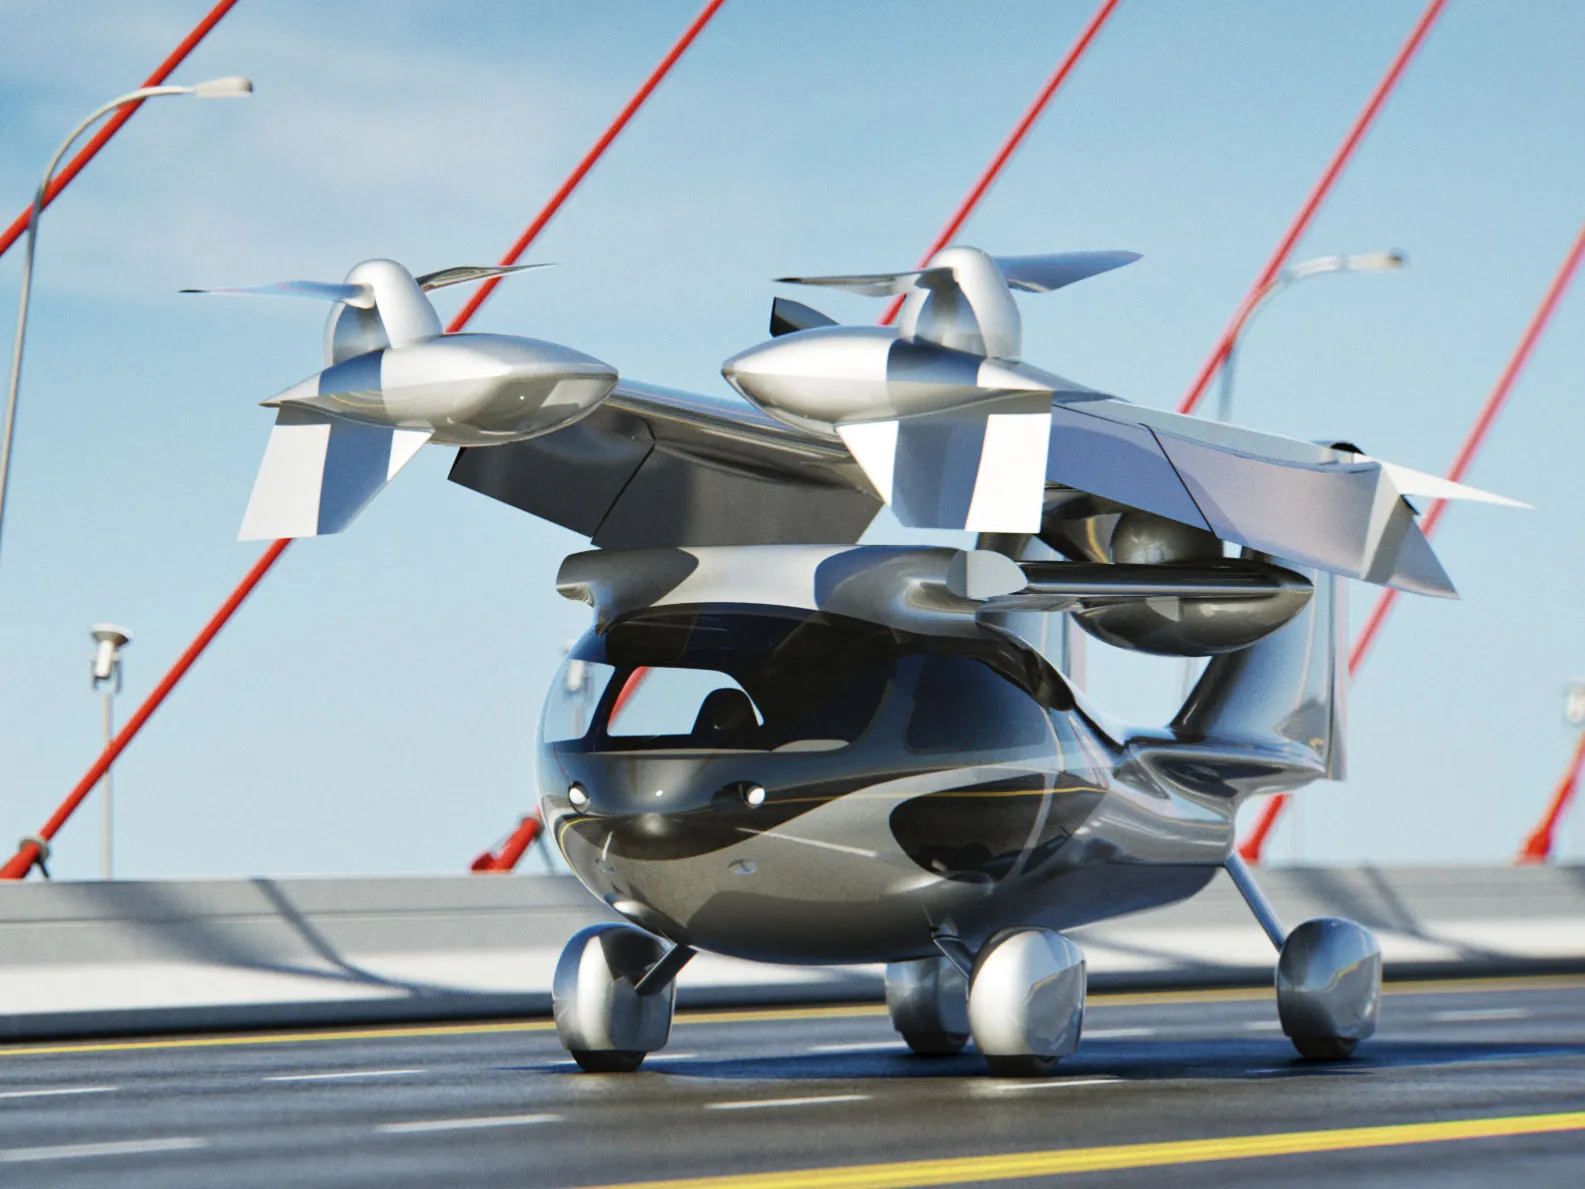 ASKA A5, Kendaraan Hybrid yang Bisa Terbang dan Melaju di Darat